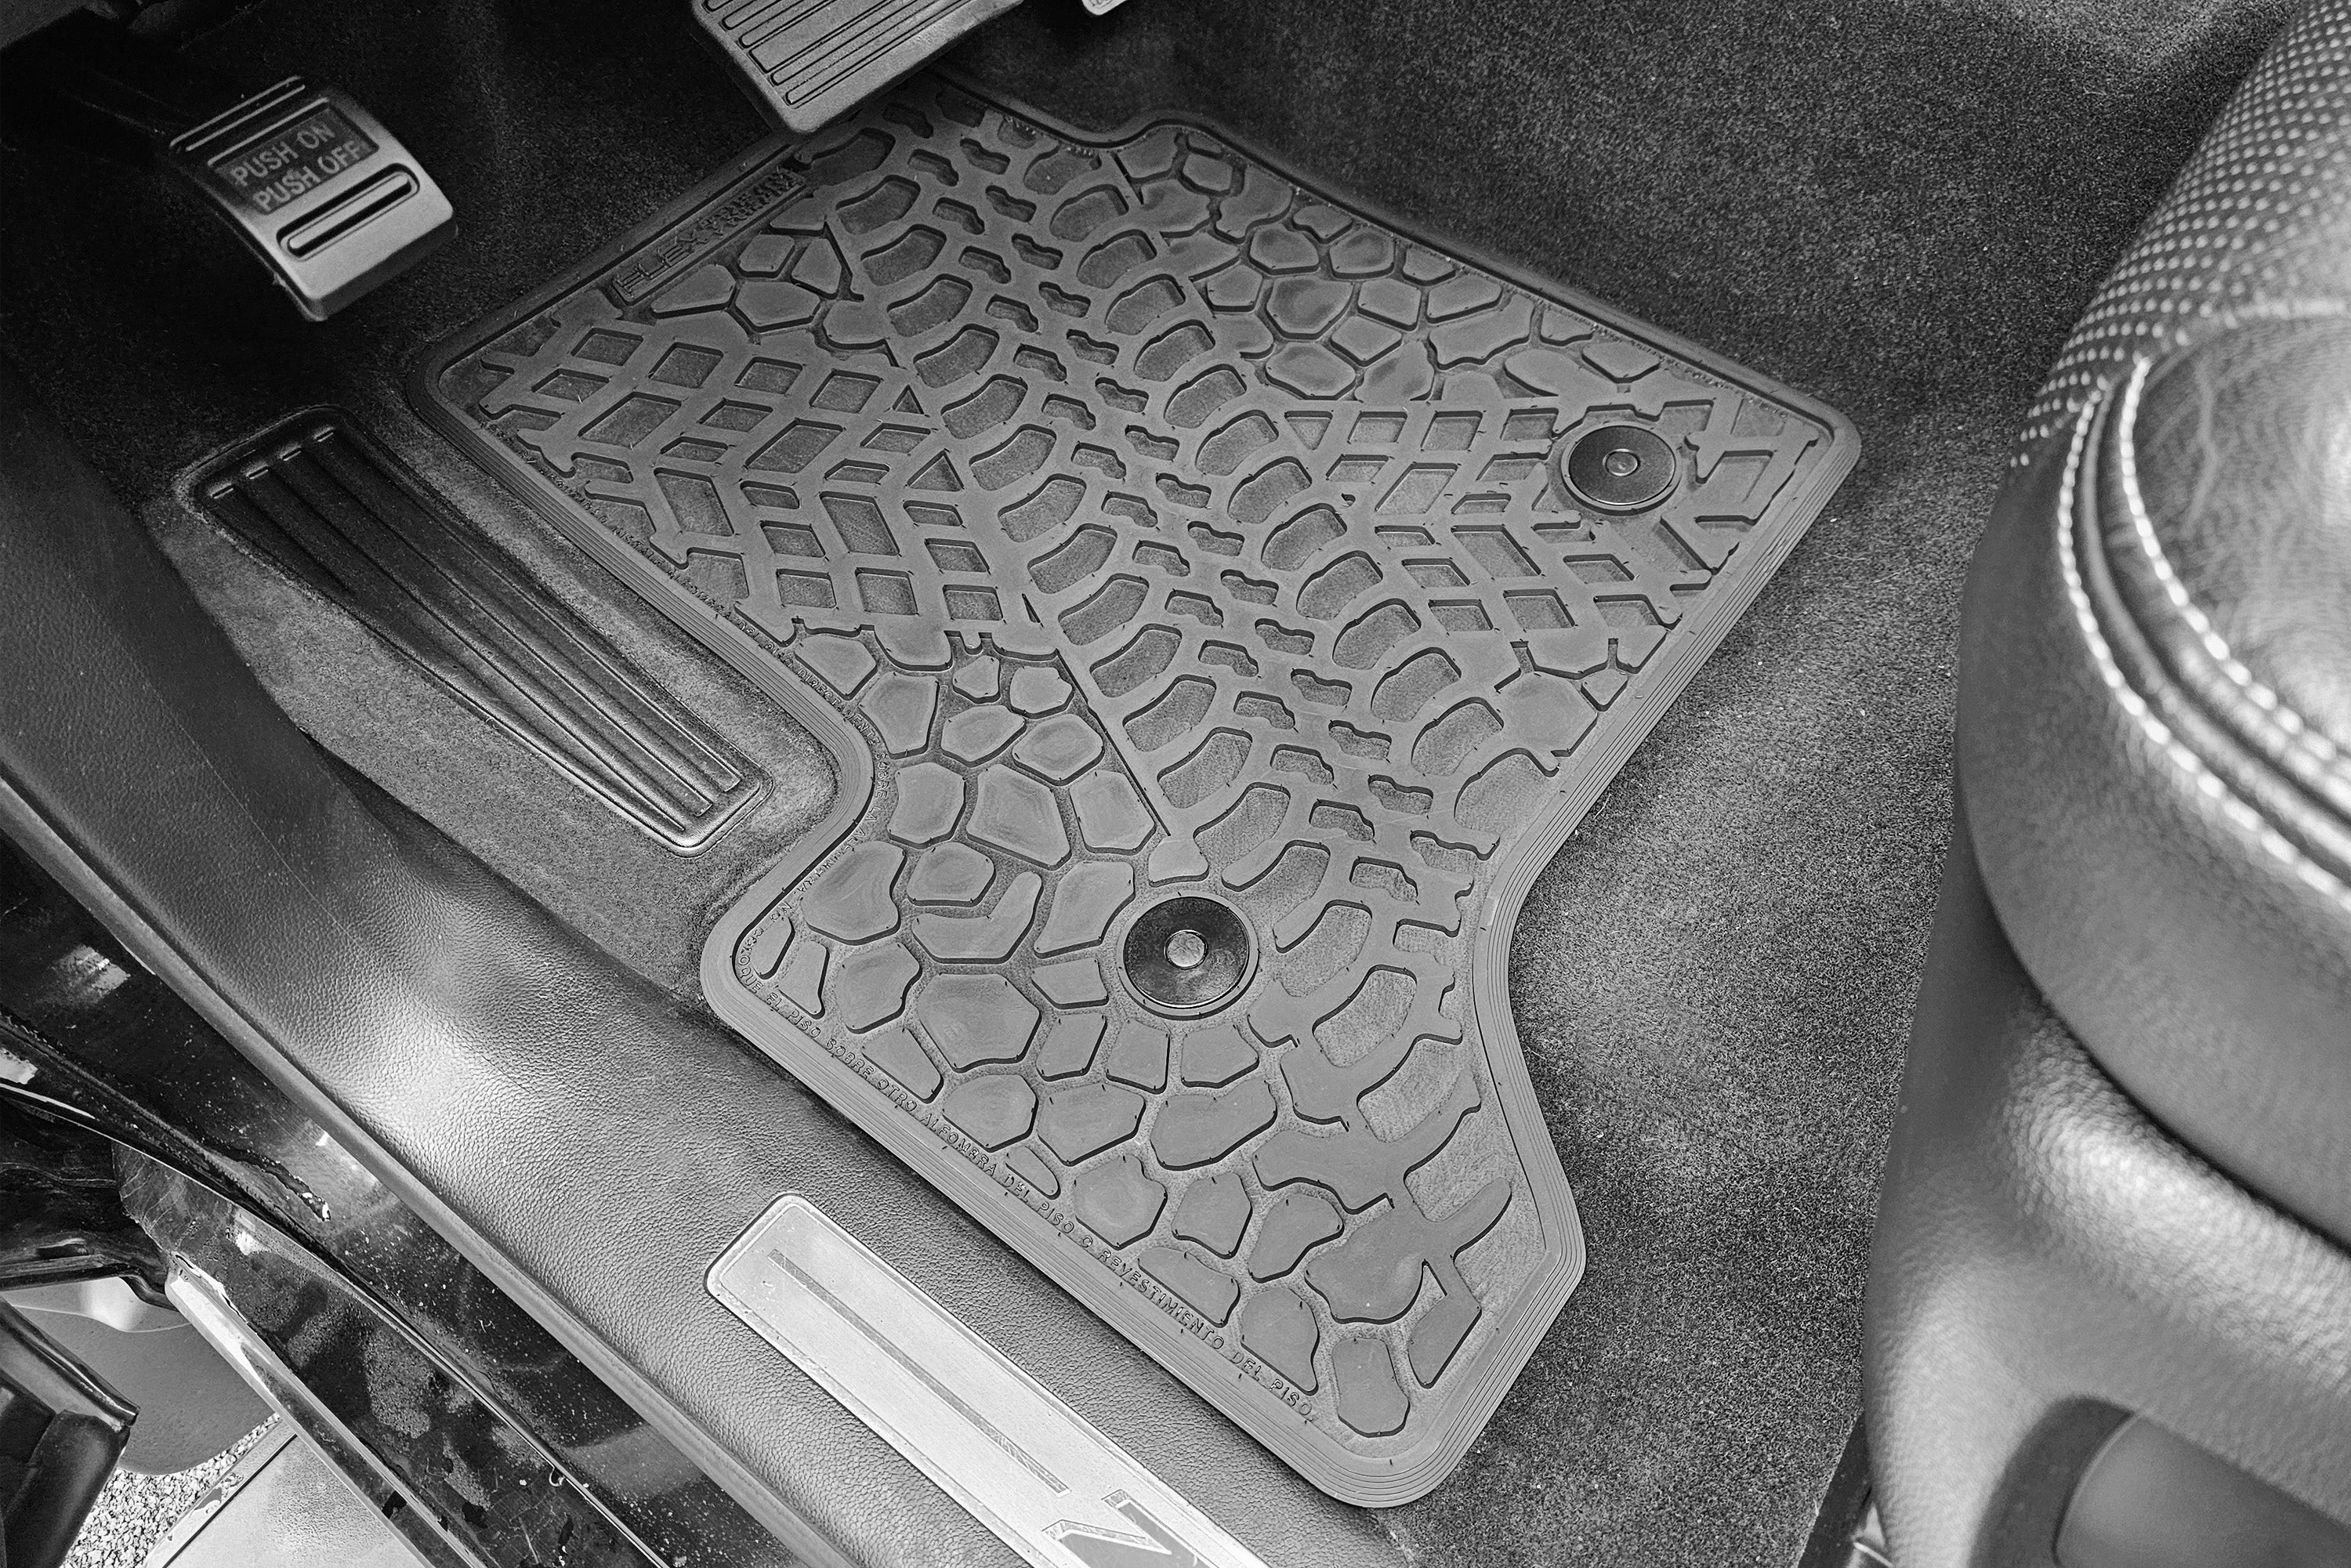 Silverado/Sierra Floor Mats 14-18 Silverado/Sierra Double Cab 4 Piece Tire Tread/Scorched Earth Scene - Black FlexTread